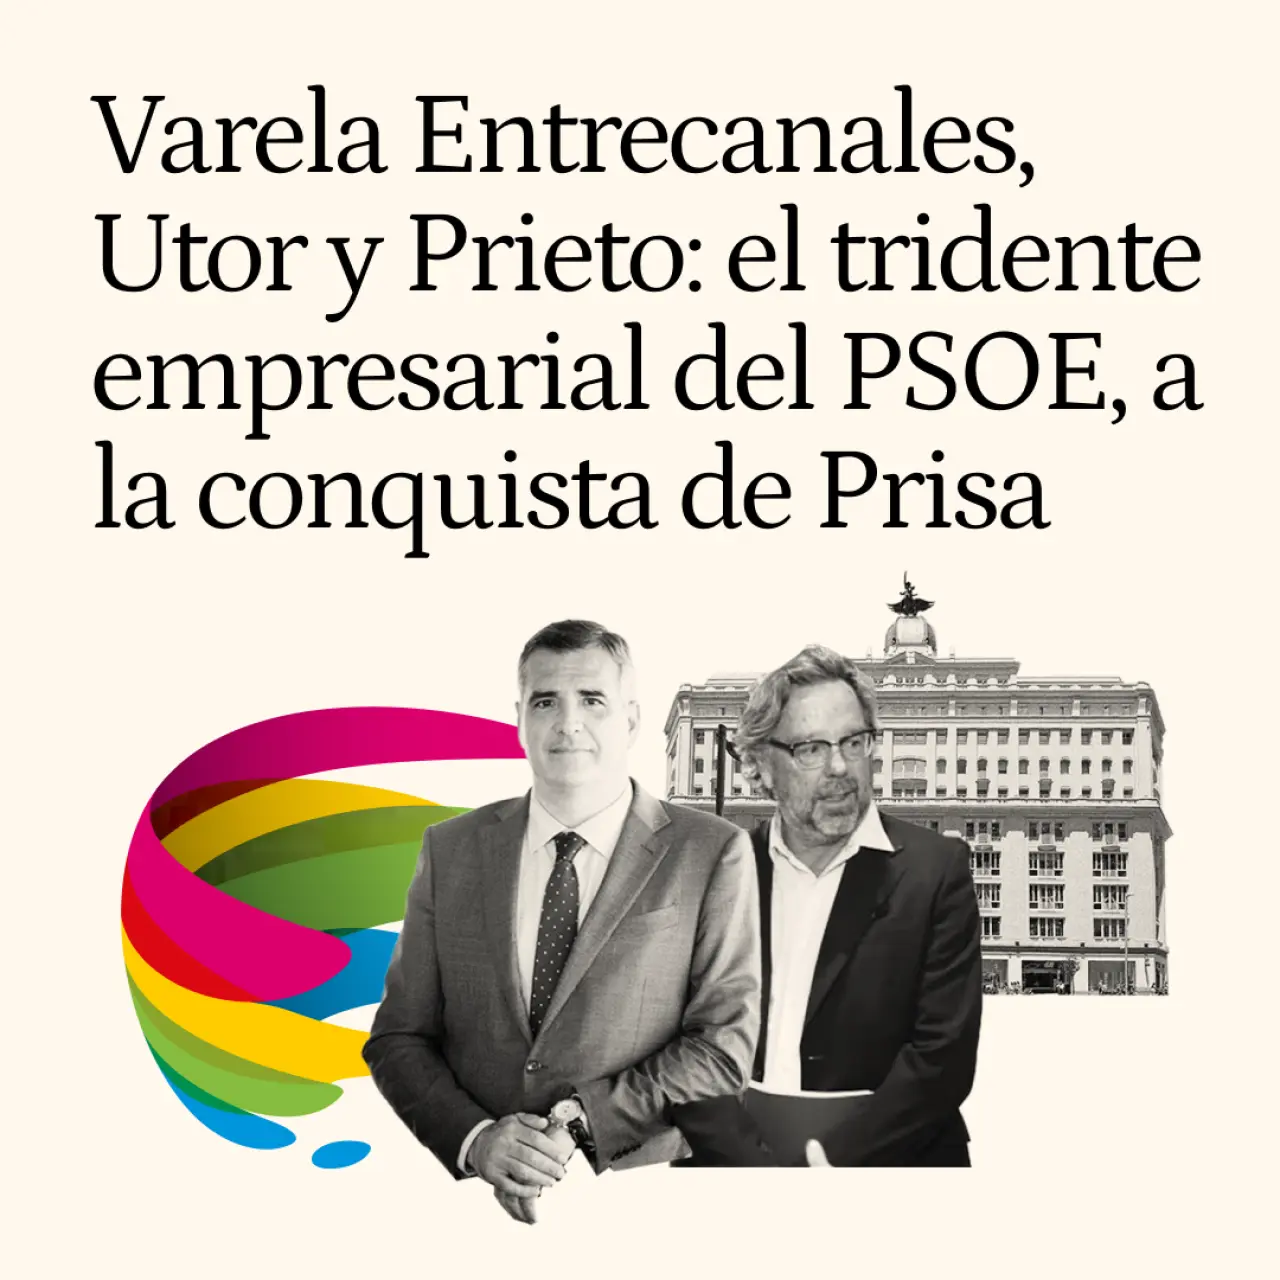 Varela Entrecanales, Utor y Prieto: el tridente empresarial del PSOE, a la conquista de Prisa